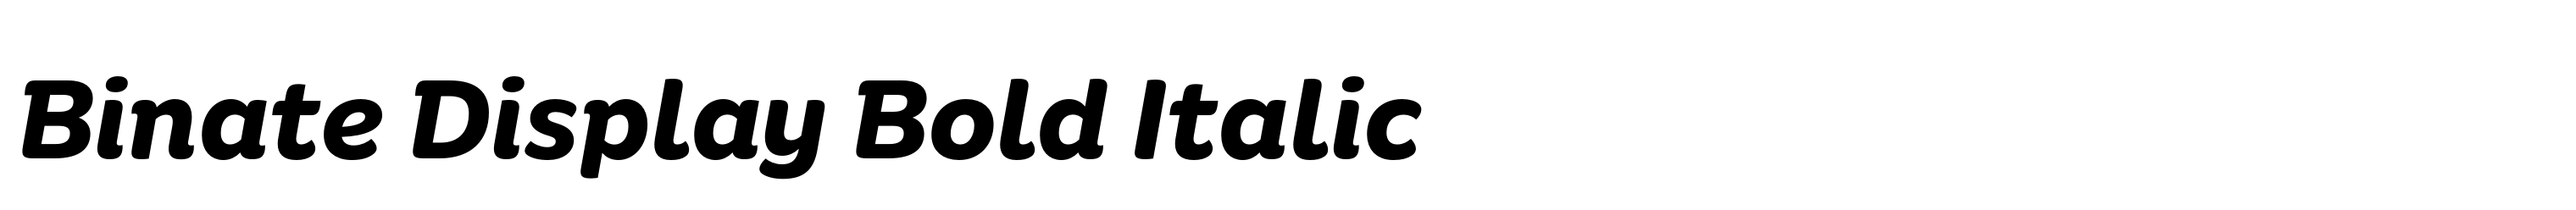 Binate Display Bold Italic